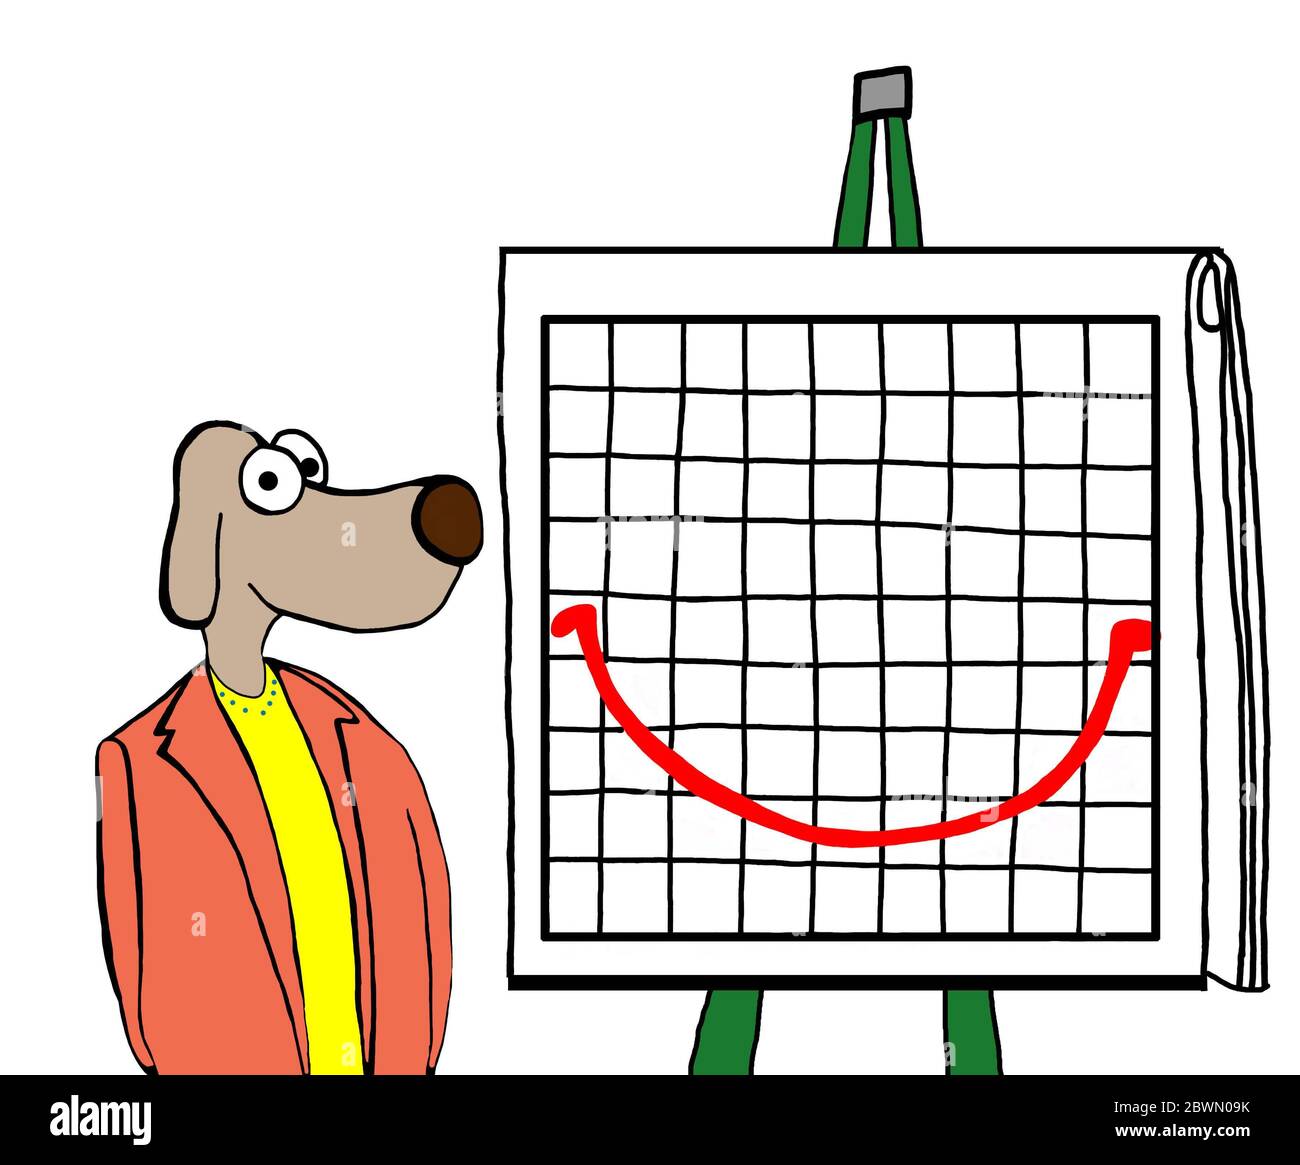 Farbe Cartoon einer Geschäftsfrau Hund und ein Smiley Gesicht Bericht. Stockfoto